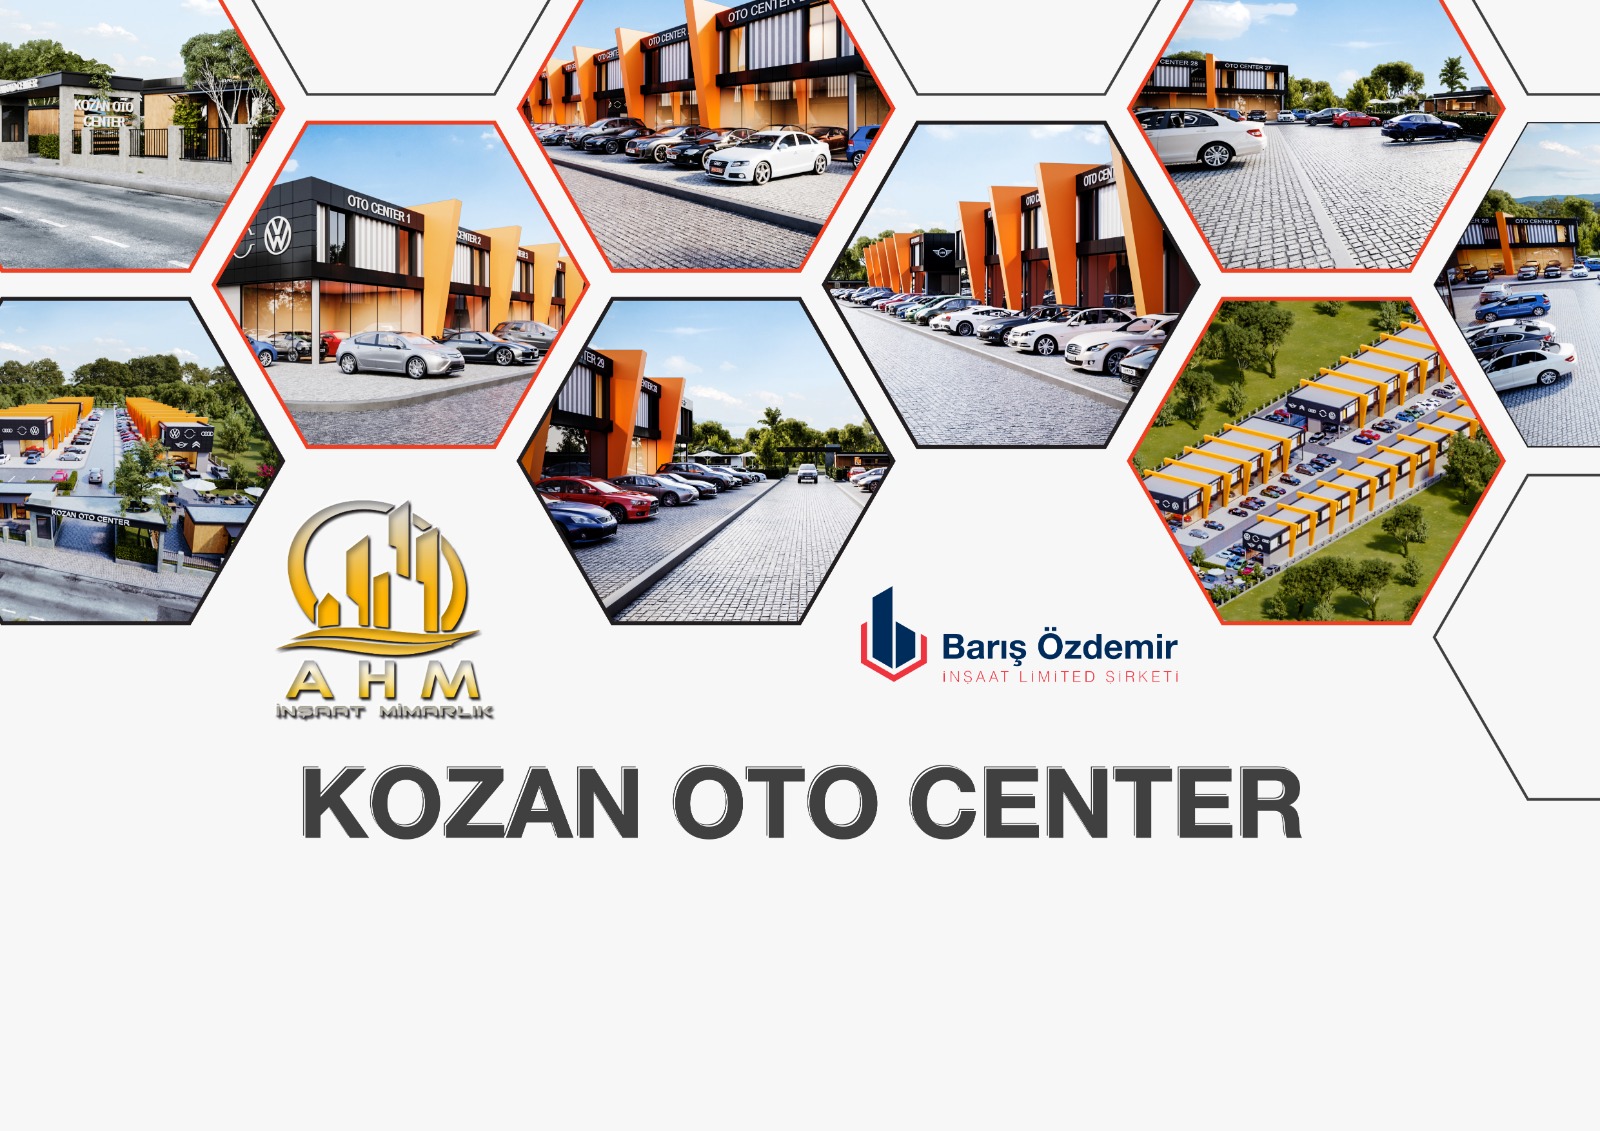 KOZAN OTO CENTER